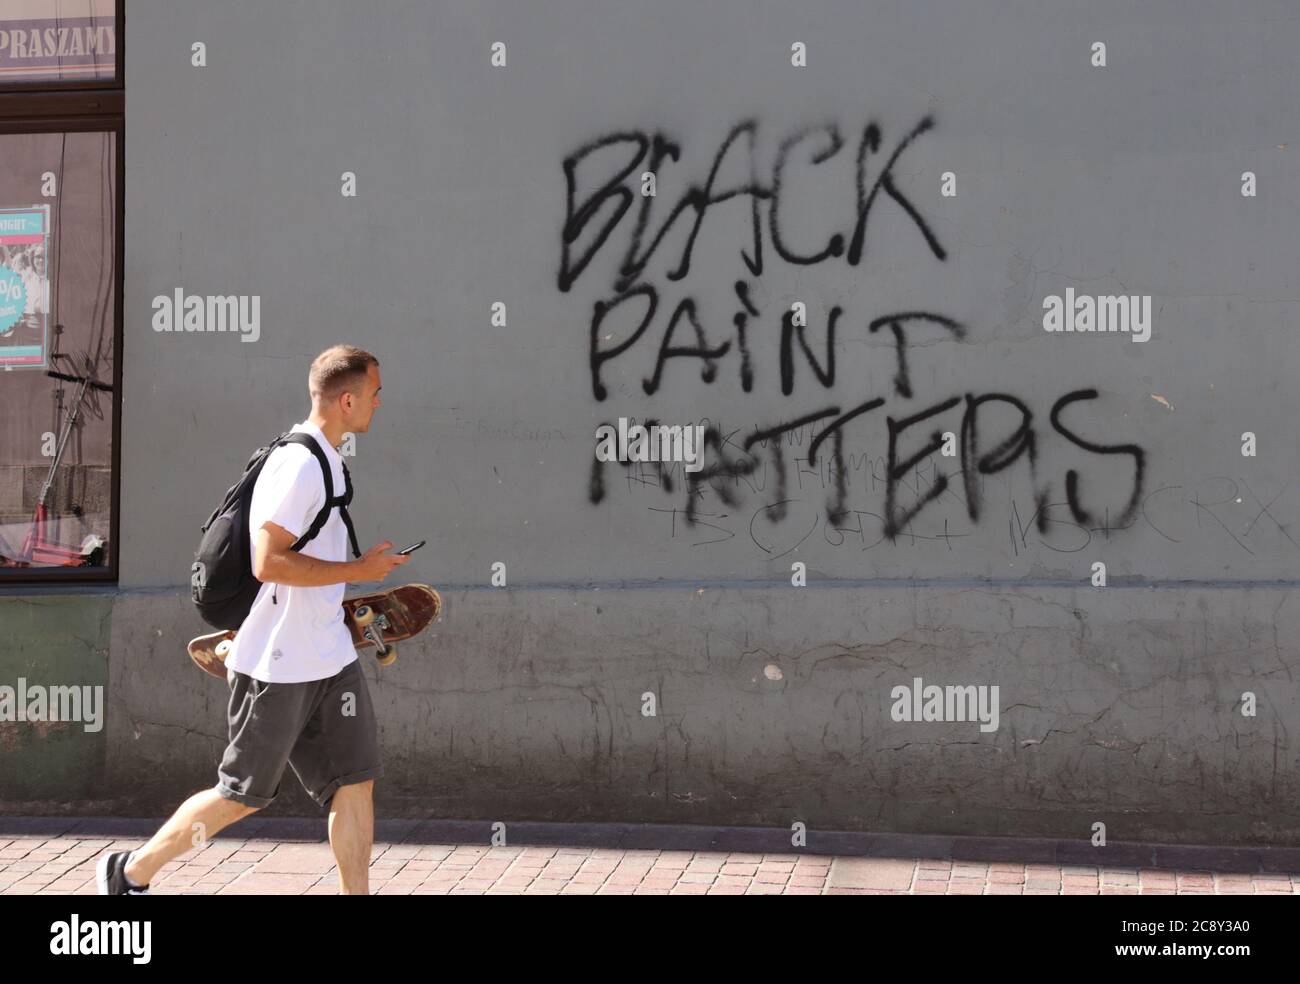 Cracovia. Cracovia. Polonia. "La vernice nera conta". Graffiti ironici sul muro nel mezzo della campagna BLM. Foto Stock